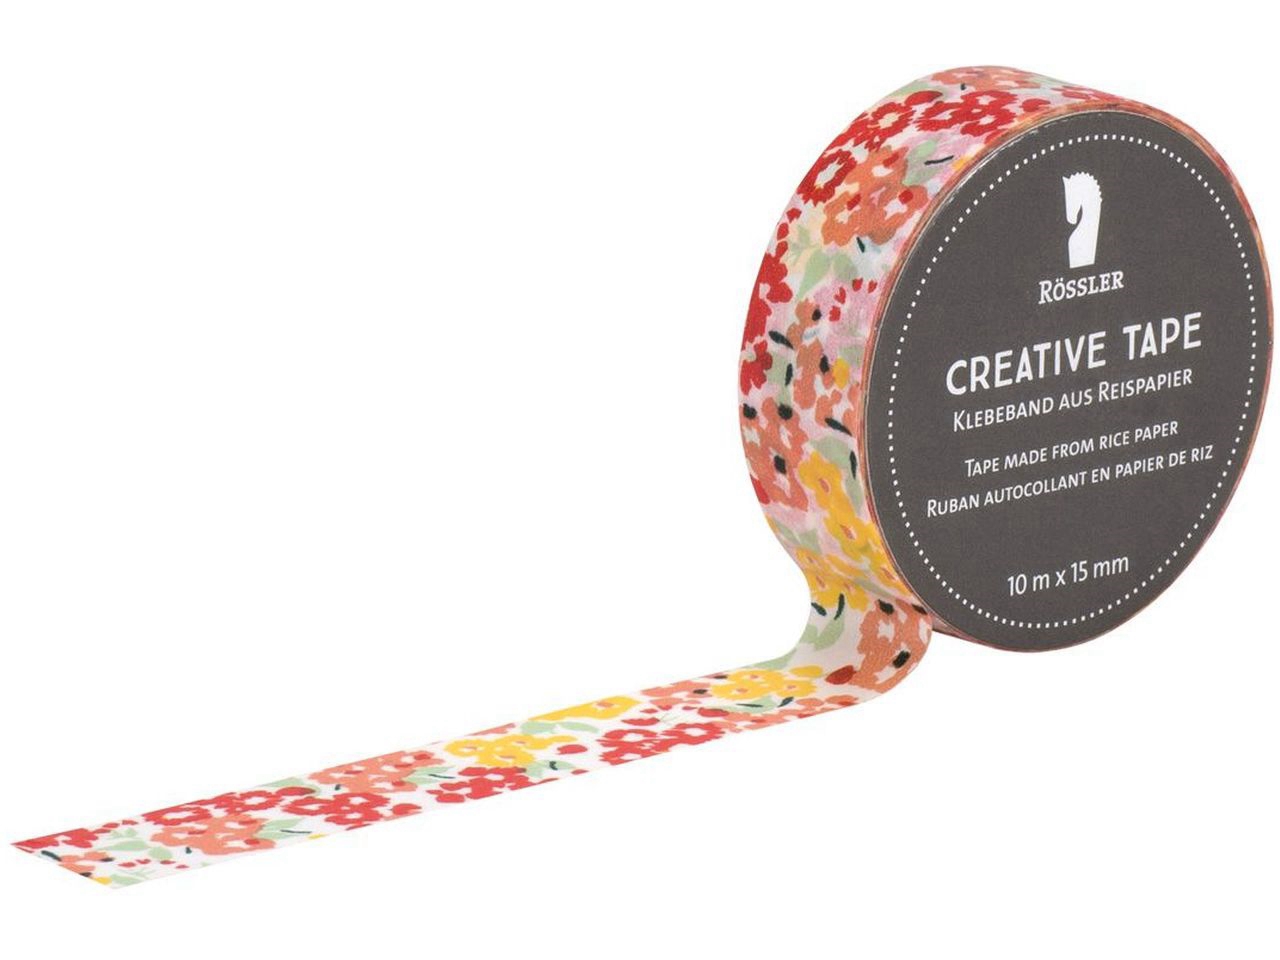 Creative Tape adesivo - Fiori gialli, rossi e arancioni